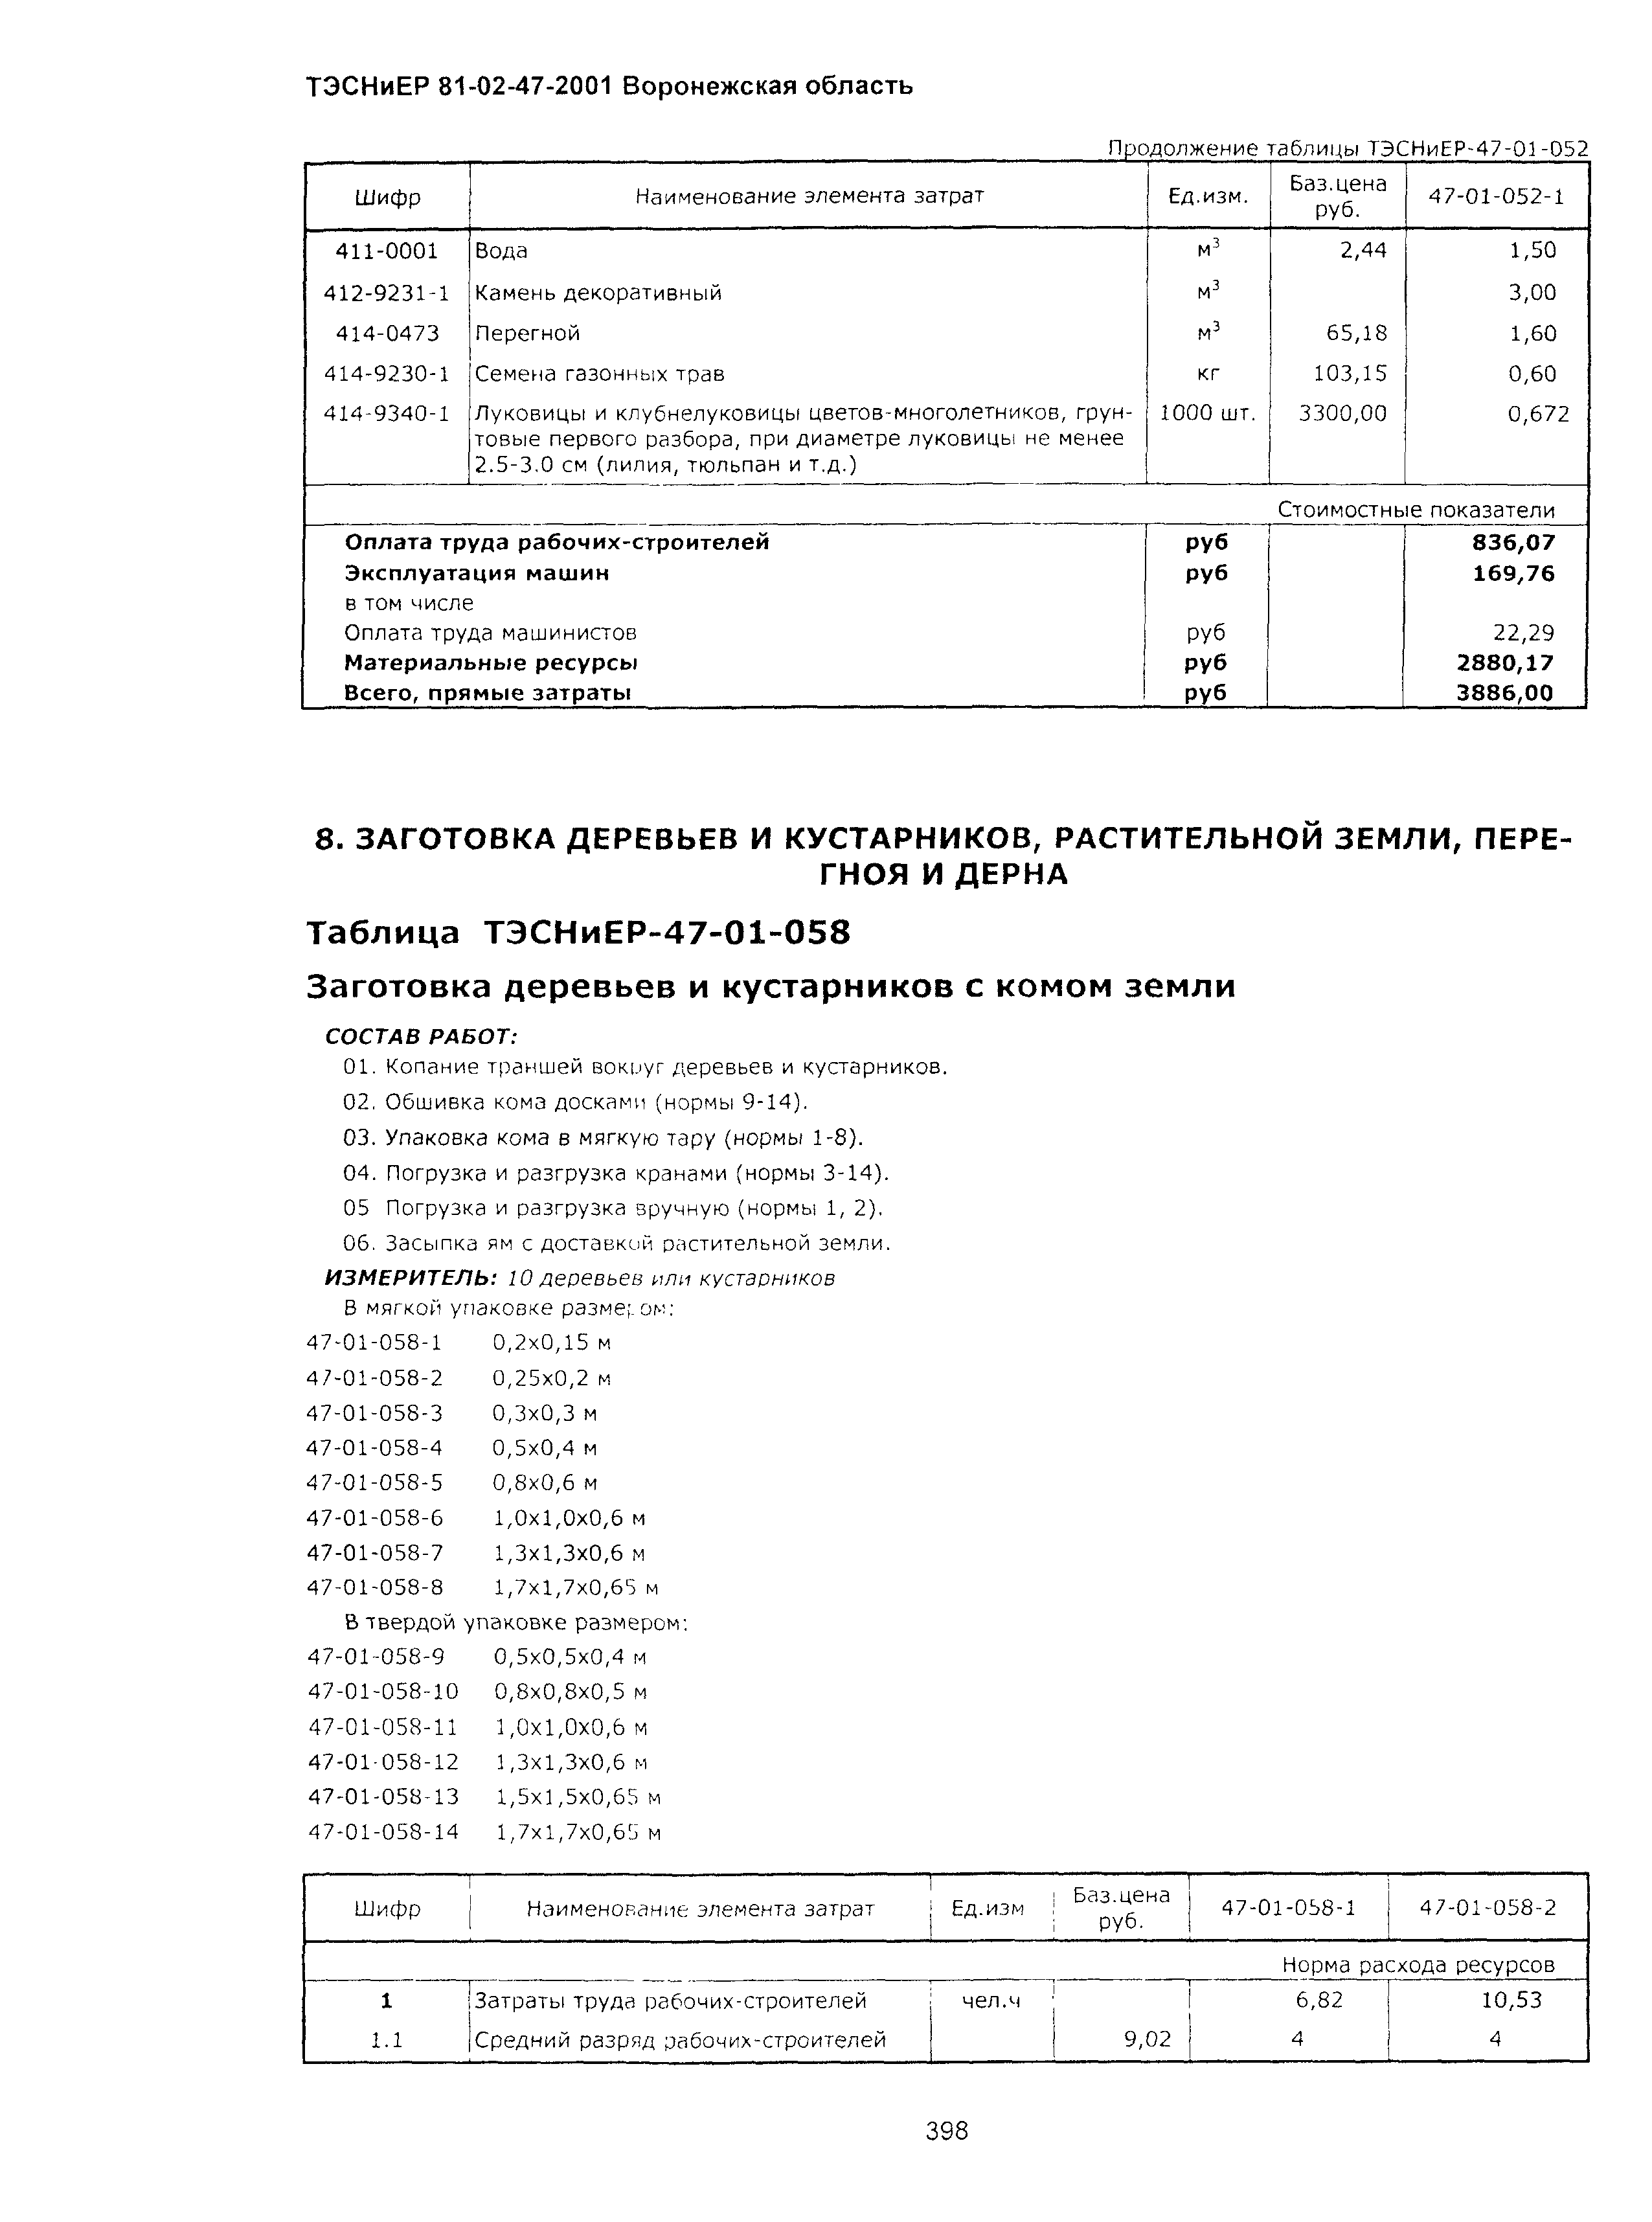 ТЭСНиЕР Воронежской области 81-02-47-2001